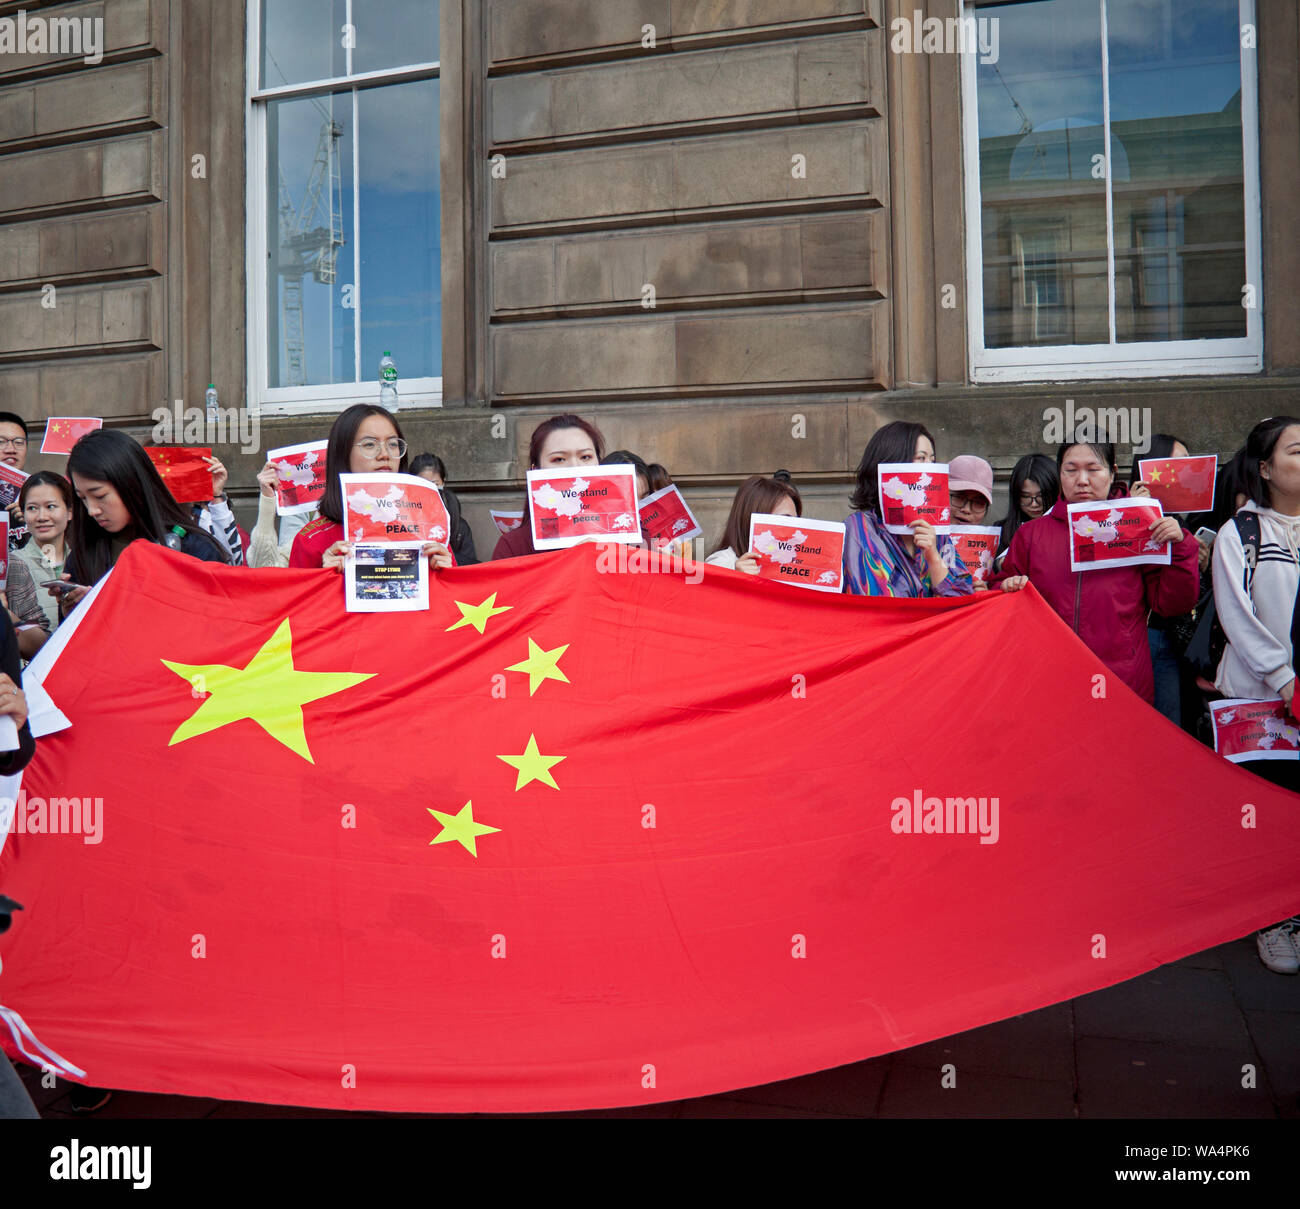 Edinburgh, Ecosse, Royaume-Uni. 17 août 2019. Chinese manifester pacifiquement dans le centre-ville avec des affiches anciennes 'ce qui s'est passé le 11/8 à Hong Kong". "Les agents de police sont gravement blessés par la bombe de l'essence a tiré d'émeutiers." Banque D'Images